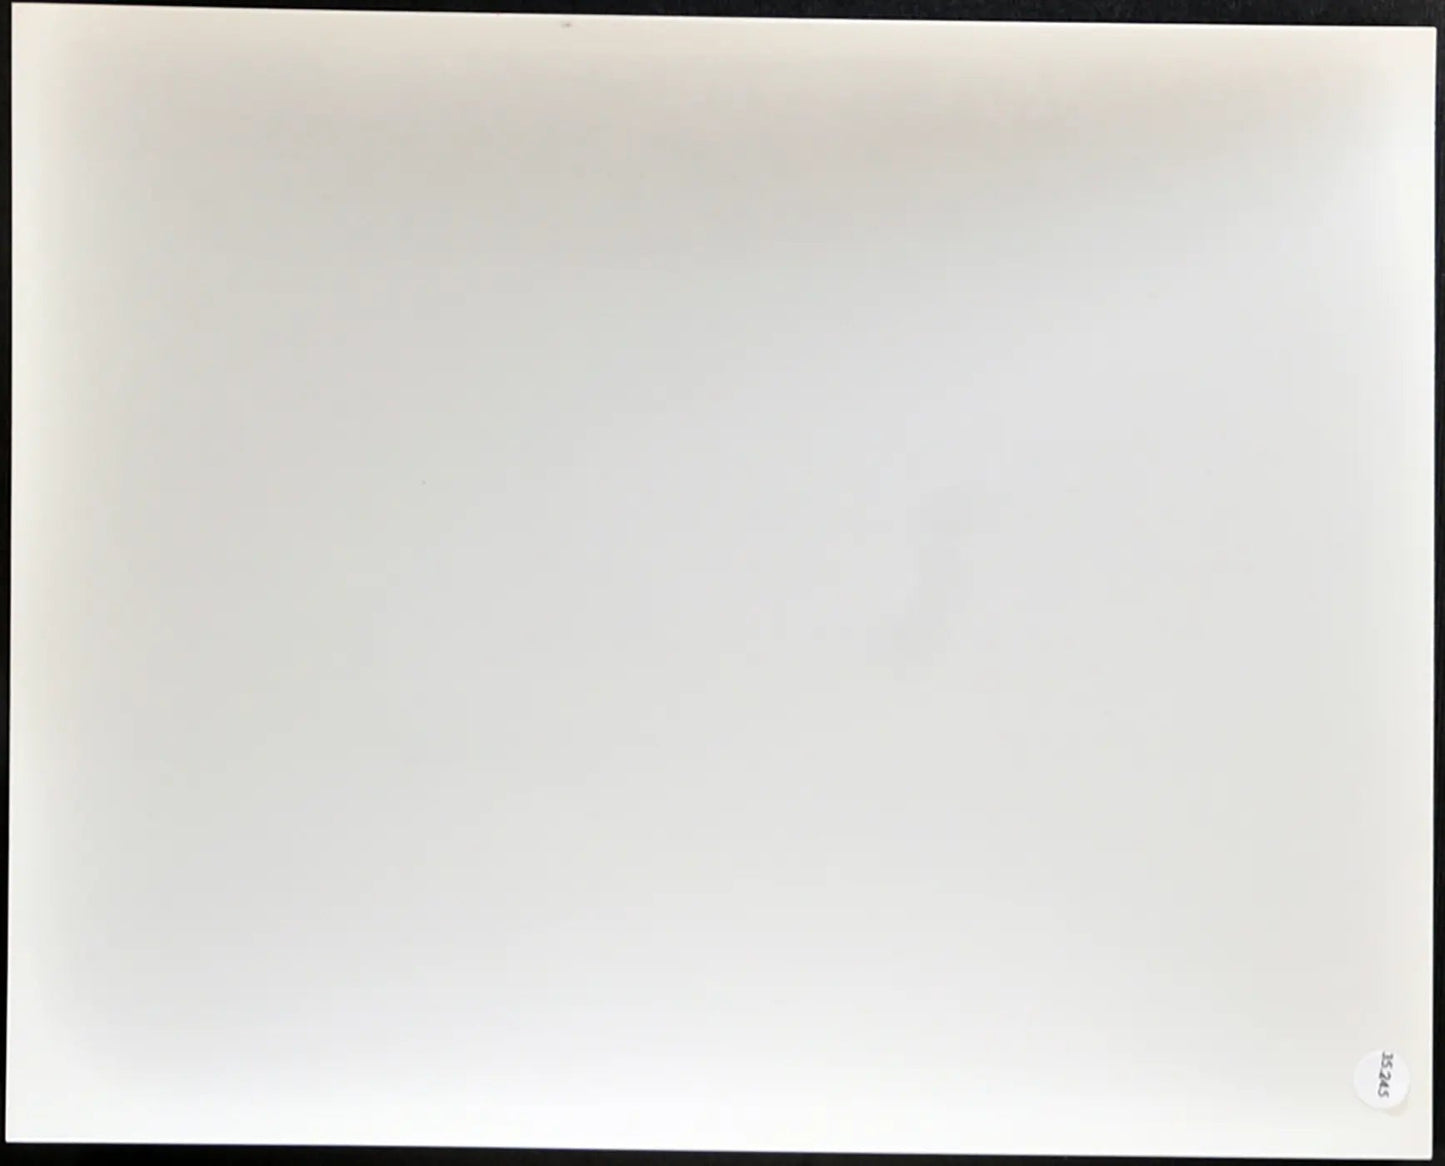 Film Fuga per la vittoria 1981 Ft 35245 - Stampa 20x25 cm - Farabola Stampa ai sali d'argento